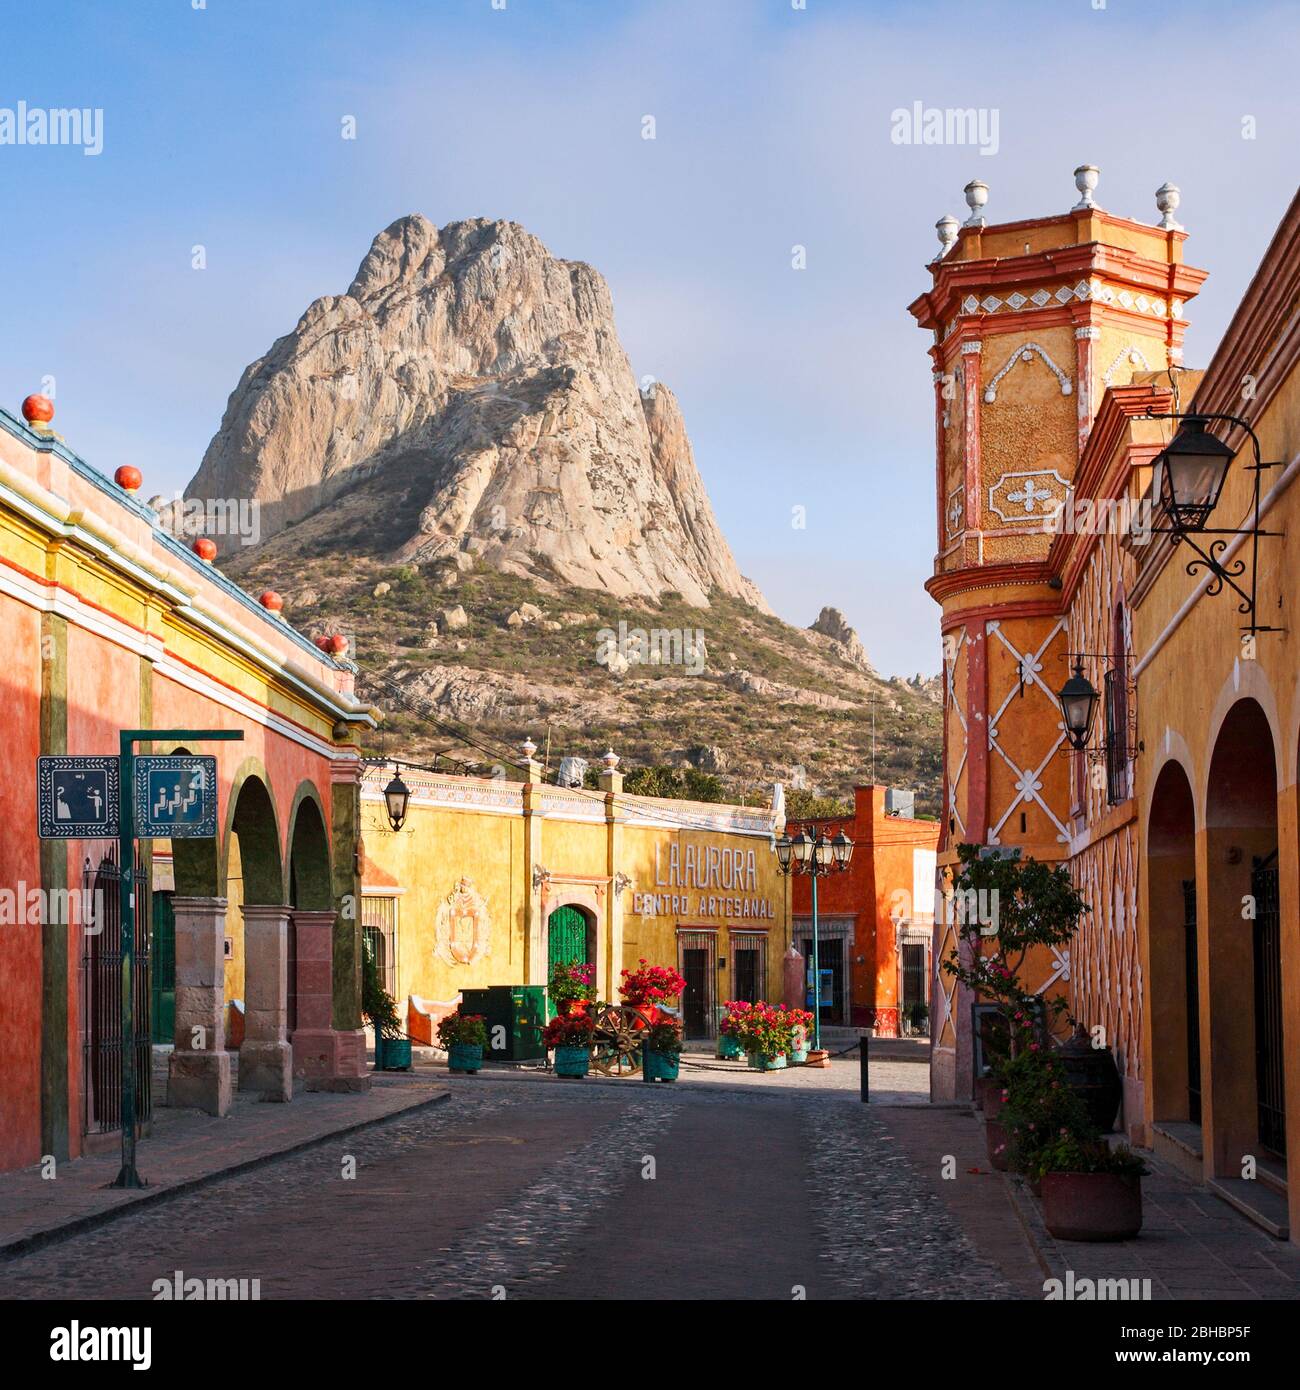 Die malerische Stadt Bernal, Queretaro mit dem Monolith Peña de Bernal im Hintergrund. Stockfoto